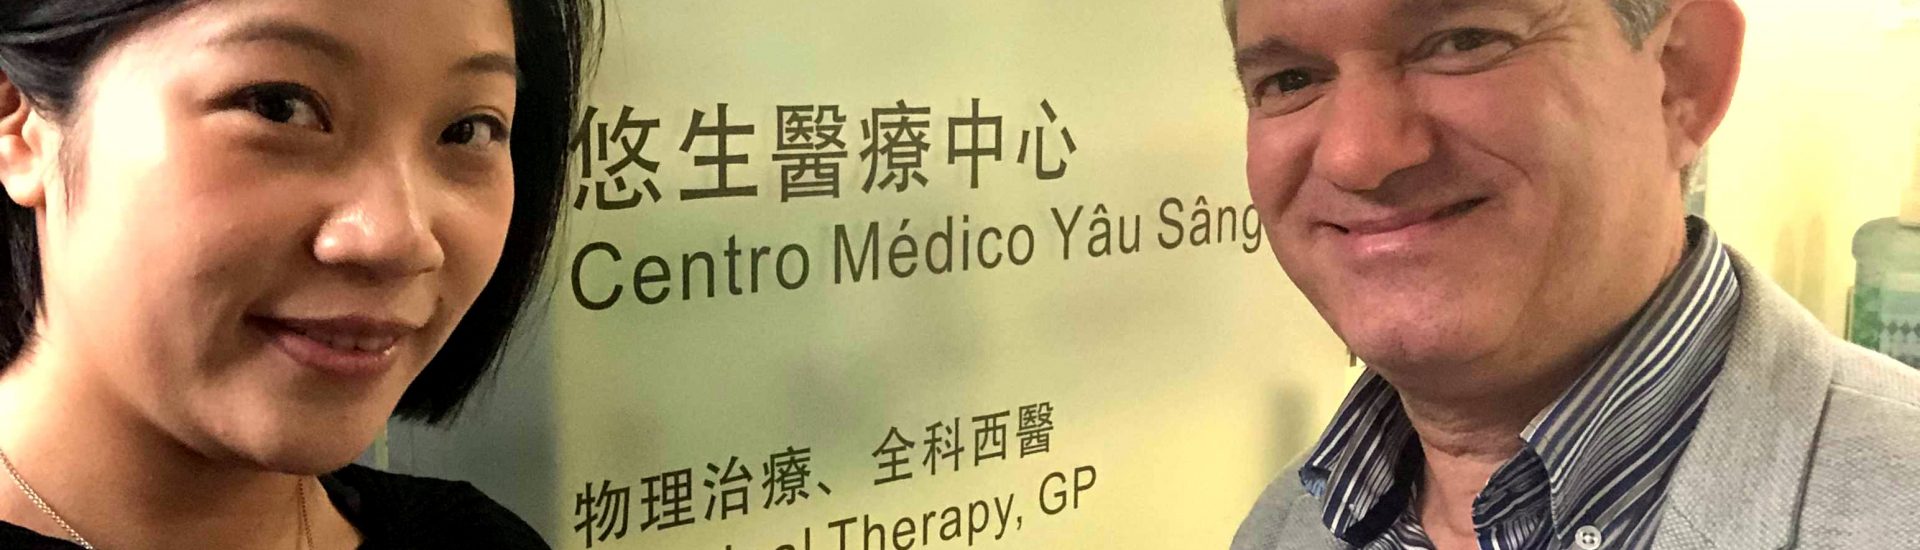 APFISIO reuniu-se com Associação de Fisioterapia de Macau